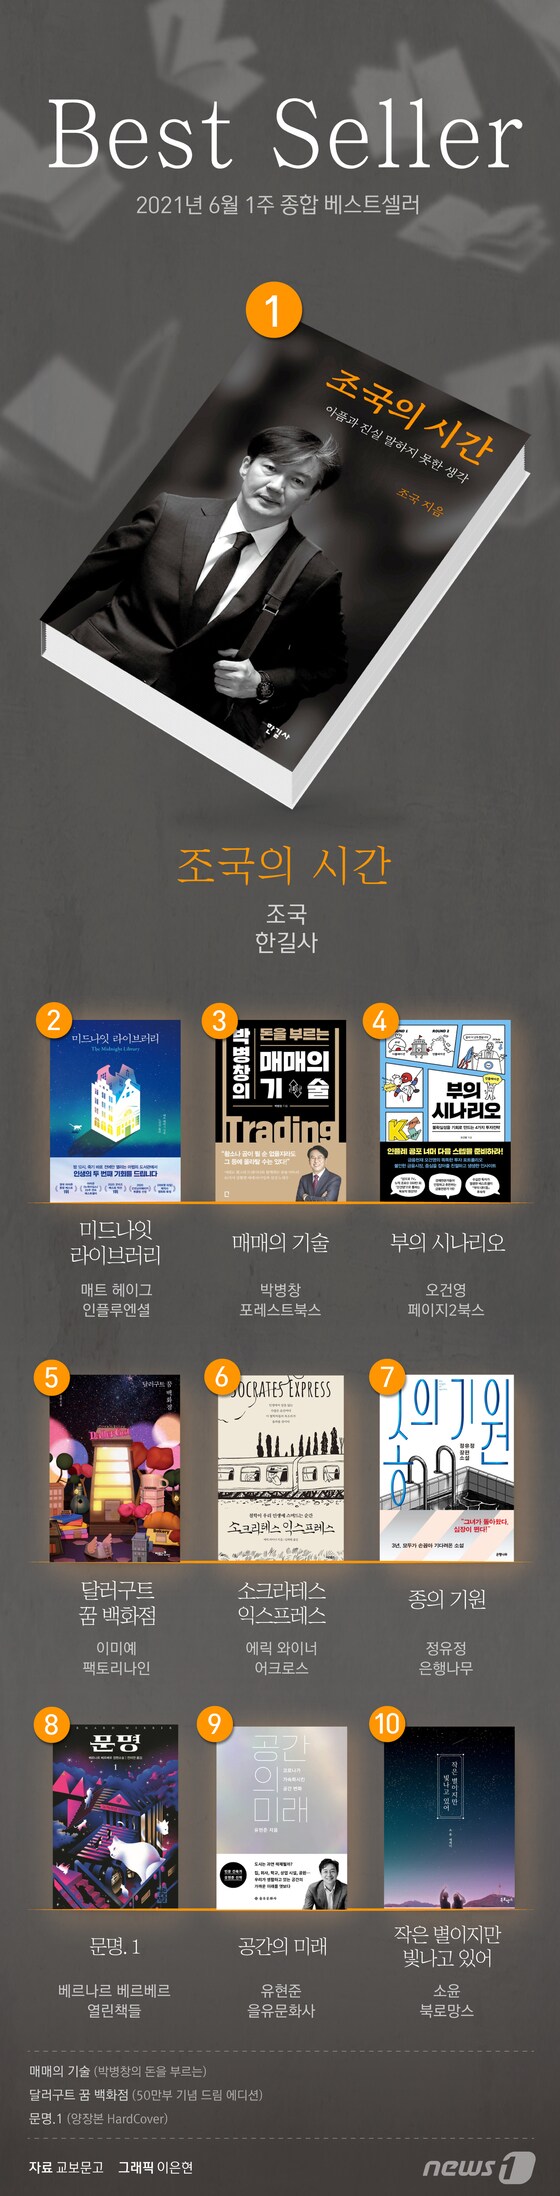 [그래픽뉴스] '조국의 시간' 2주 연속 베스트셀러 1위